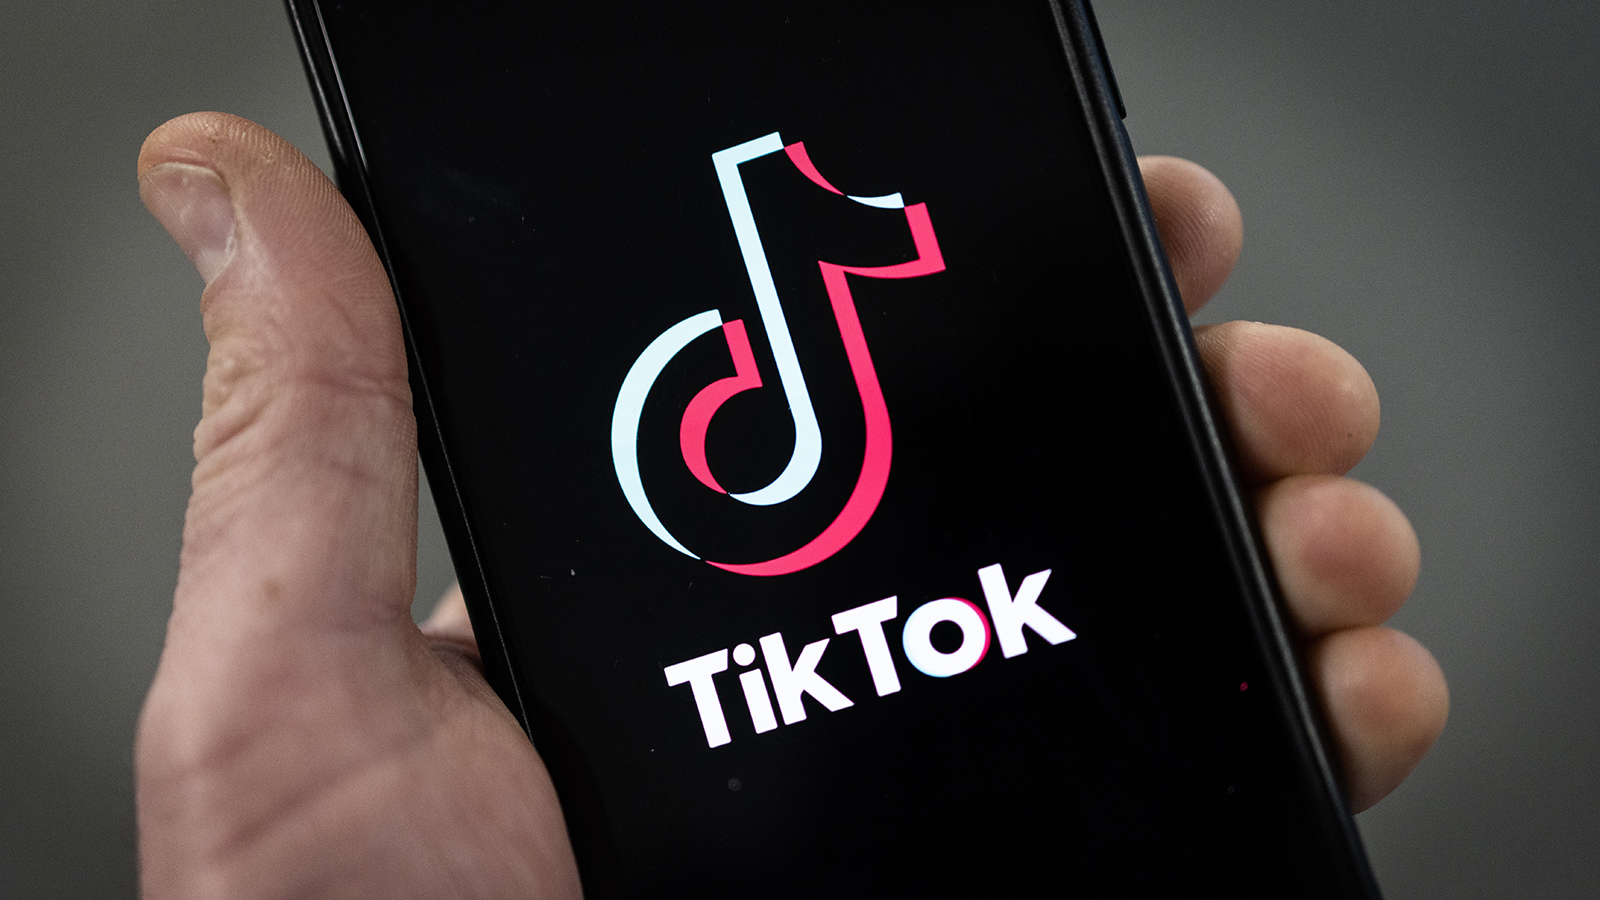 بعد قرار حظرها على بث الفيديوهات القصيرة.. «تيك توك» توقف خدمة التجارة الإلكترونية في إندونيسيا